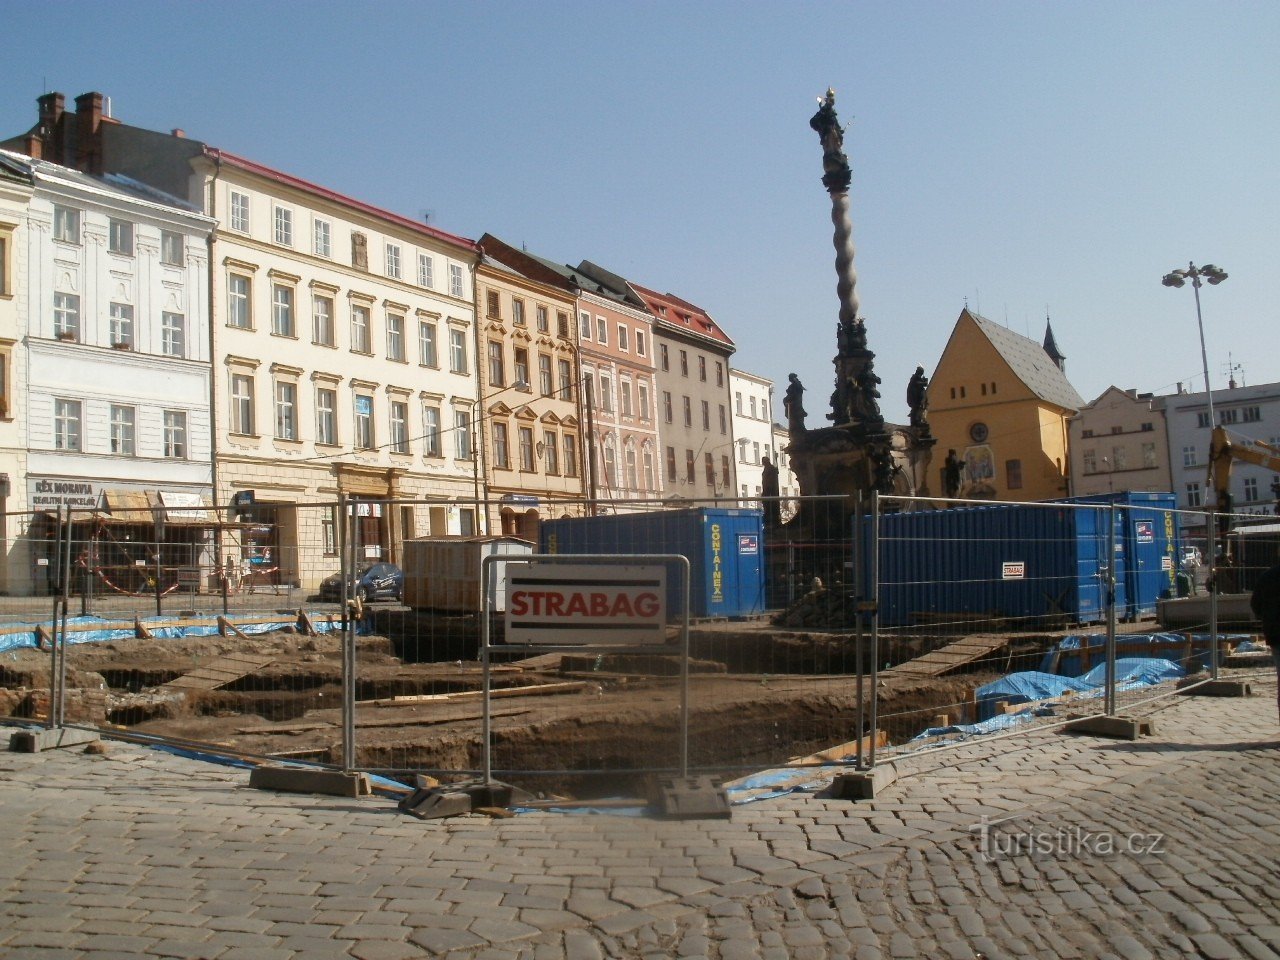 Καλοκαίρι 2012, στήλη κατά την επισκευή της πλατείας